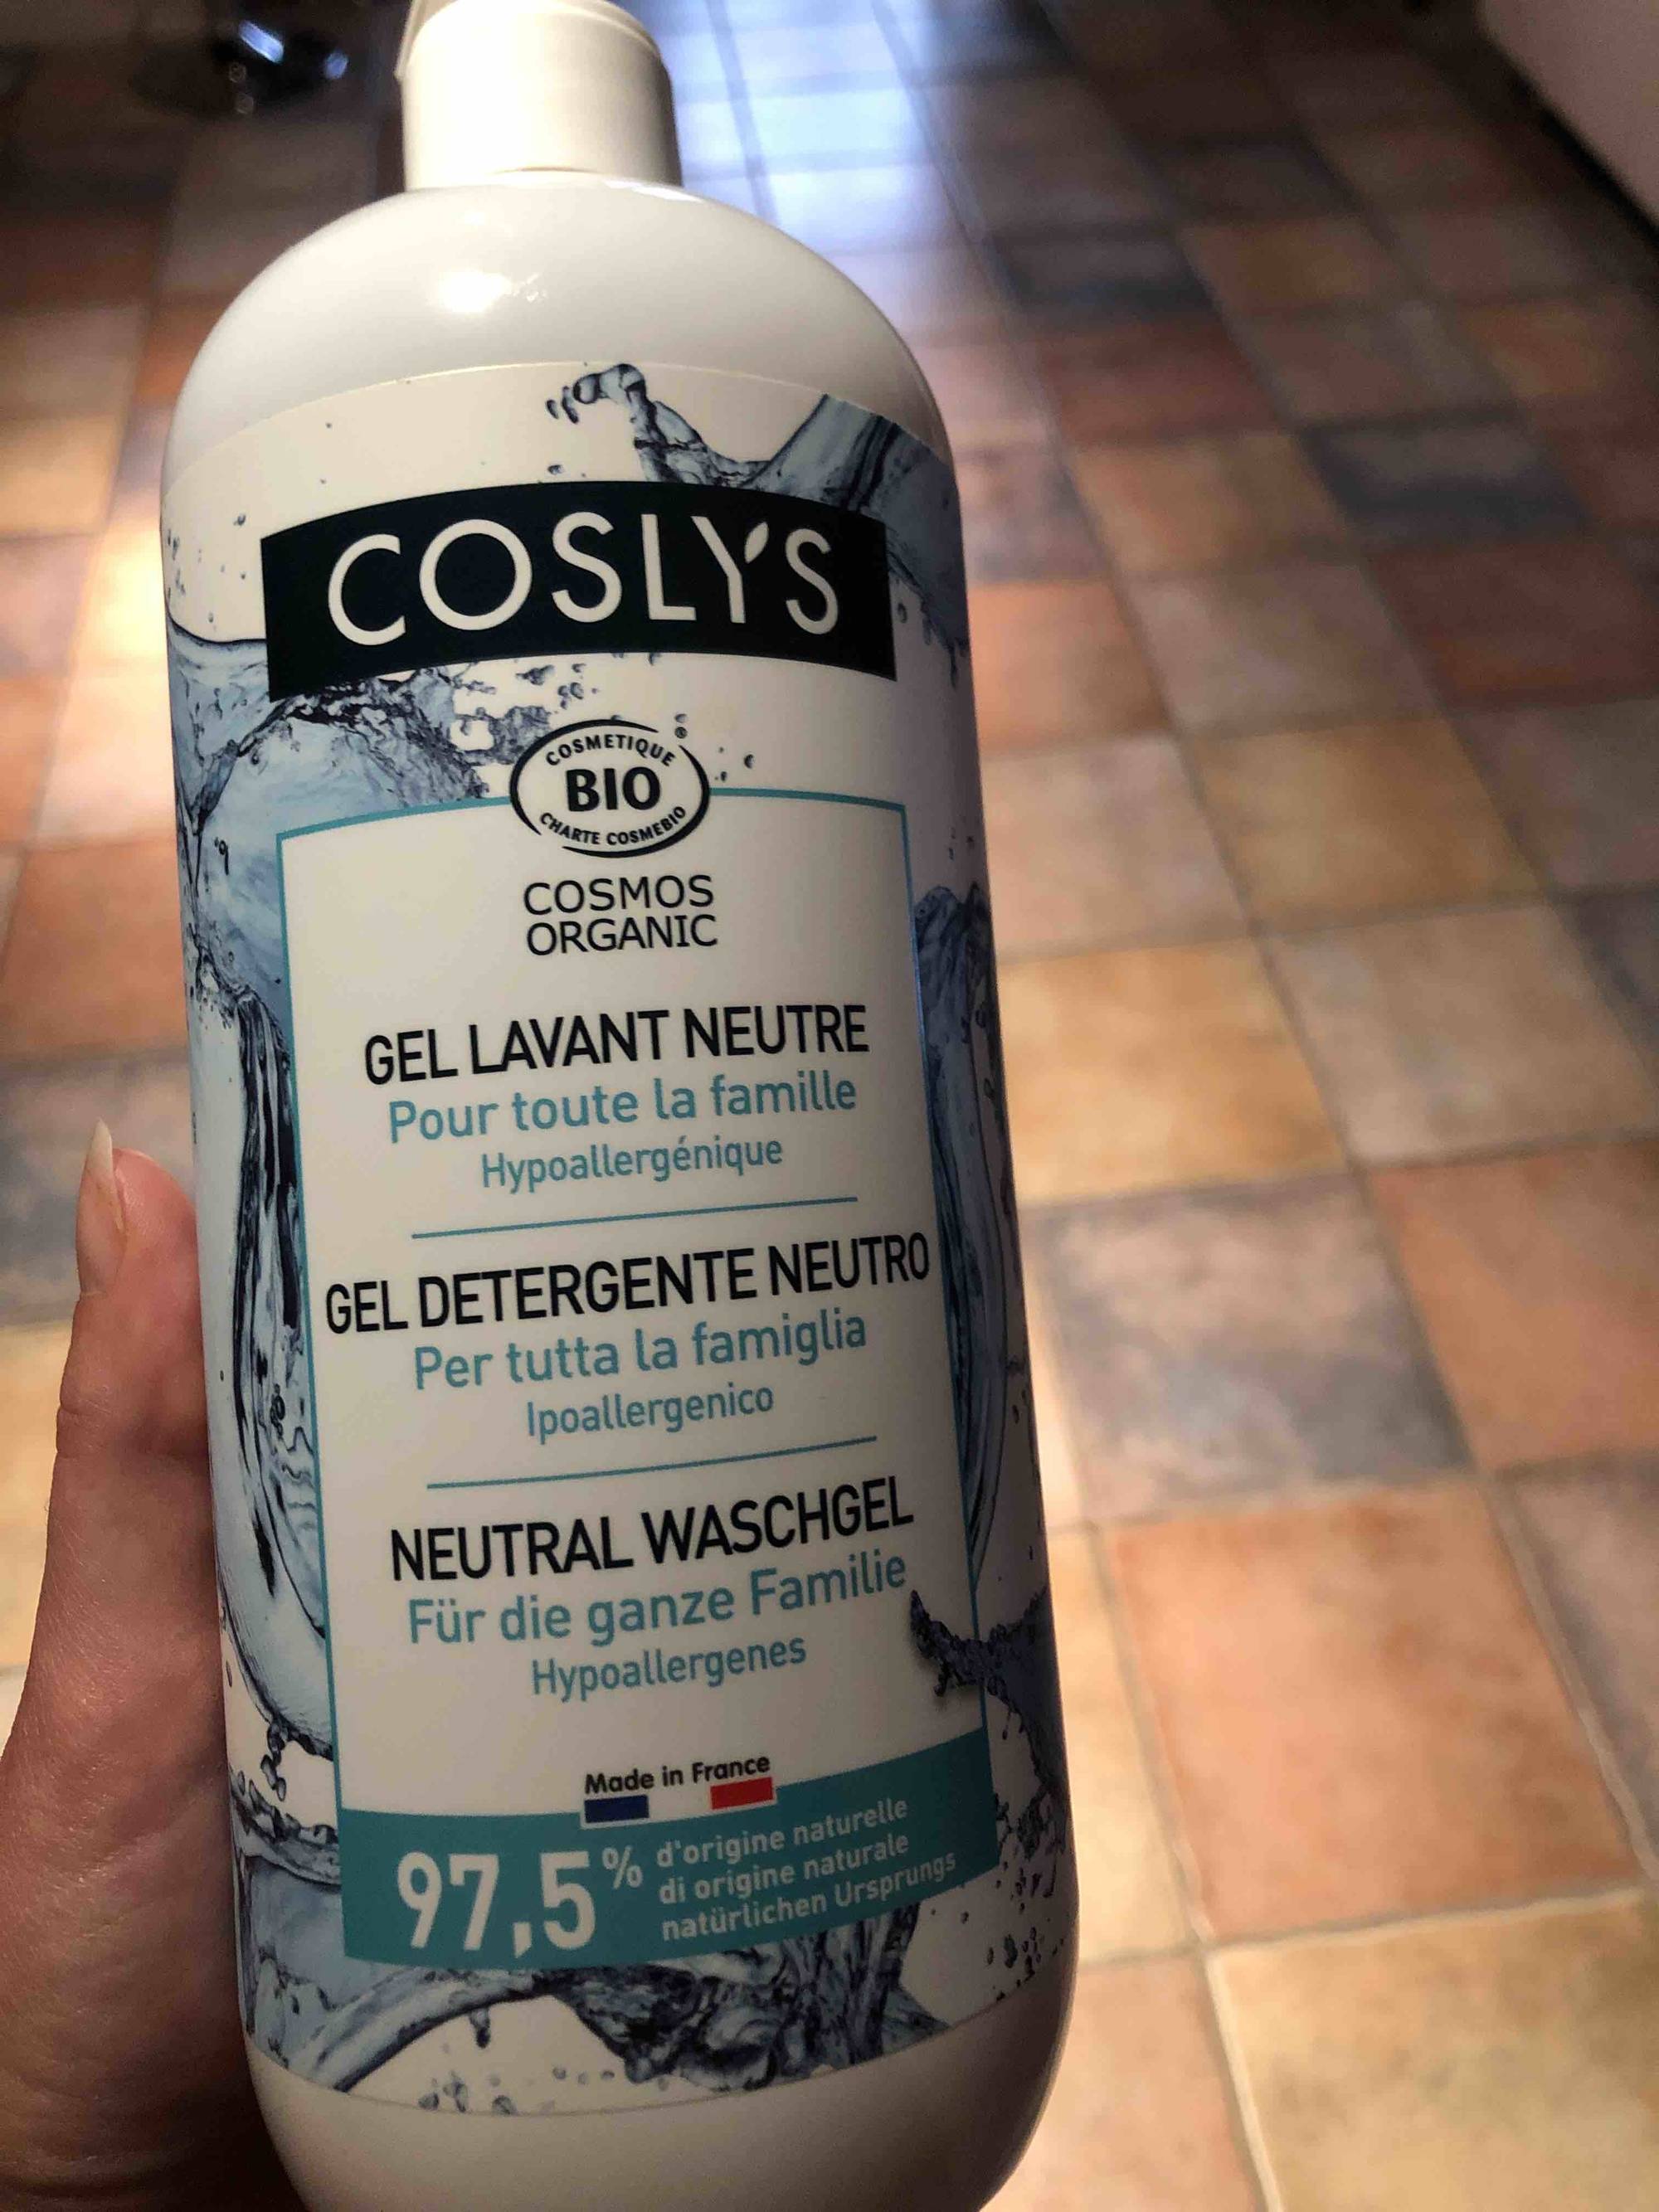 COSLYS - Gel lavant neutre pour toute la famille